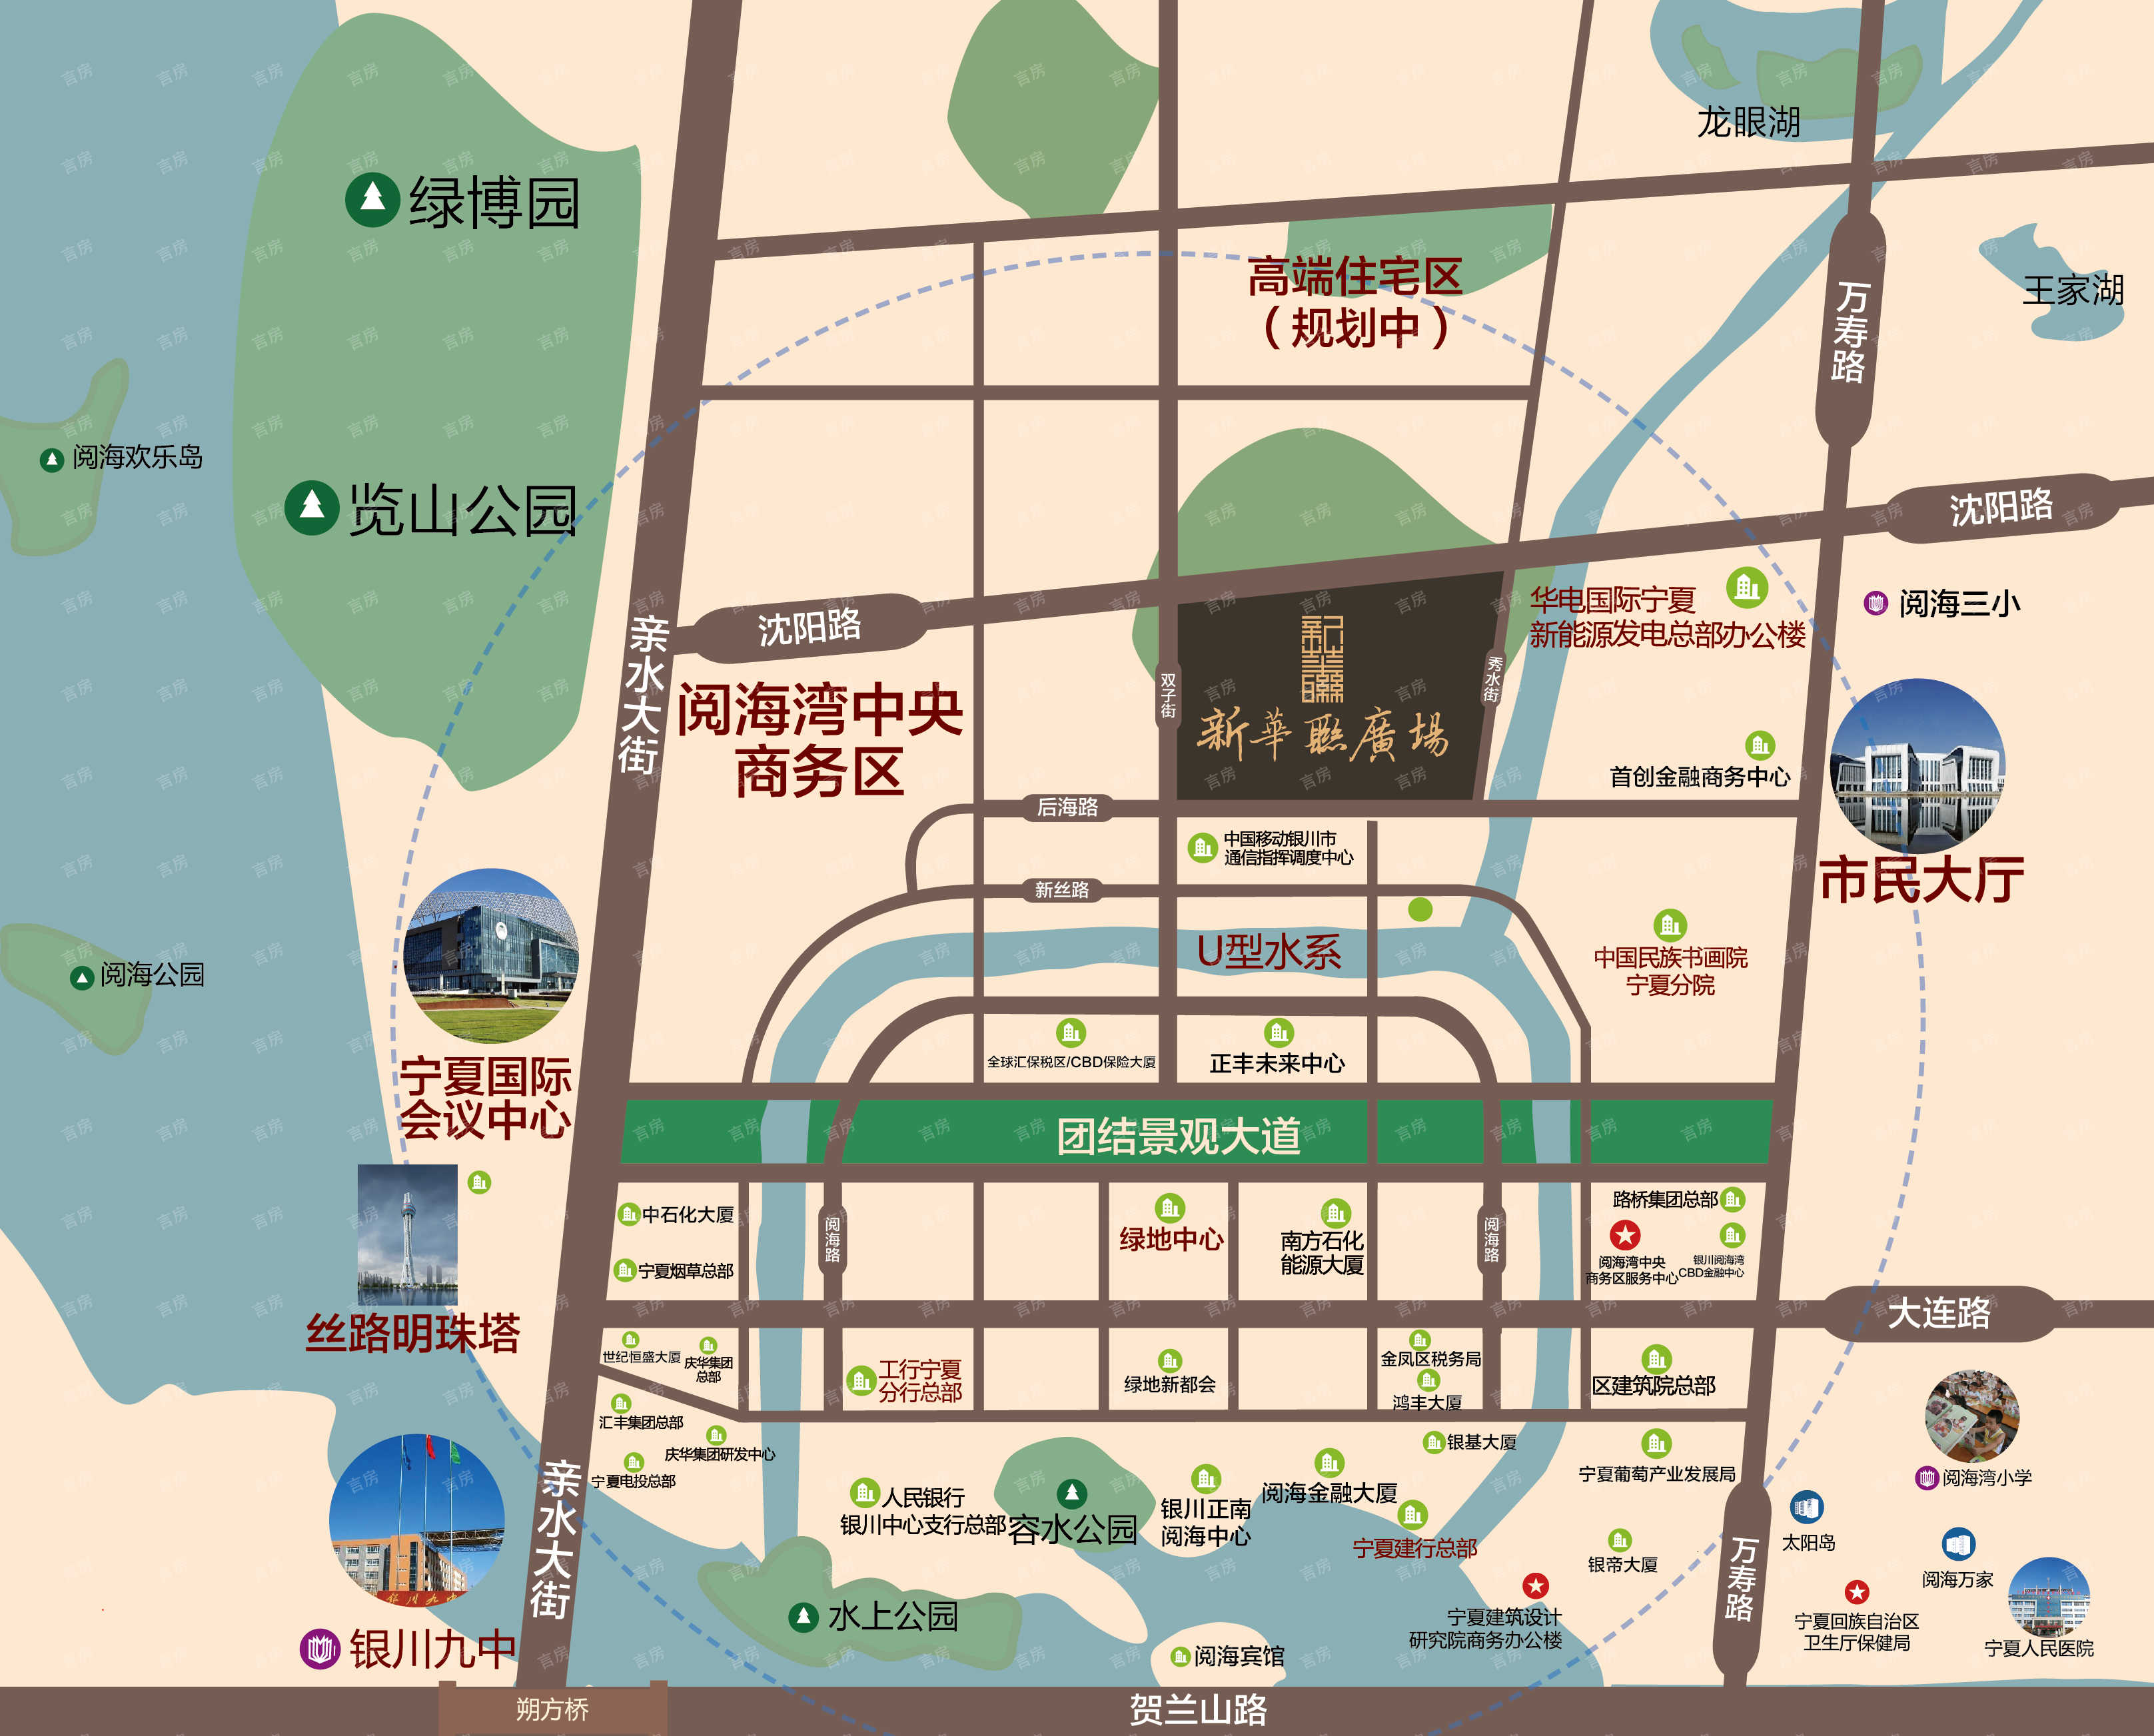 阅海湾新华联广场有鱼公寓位置图